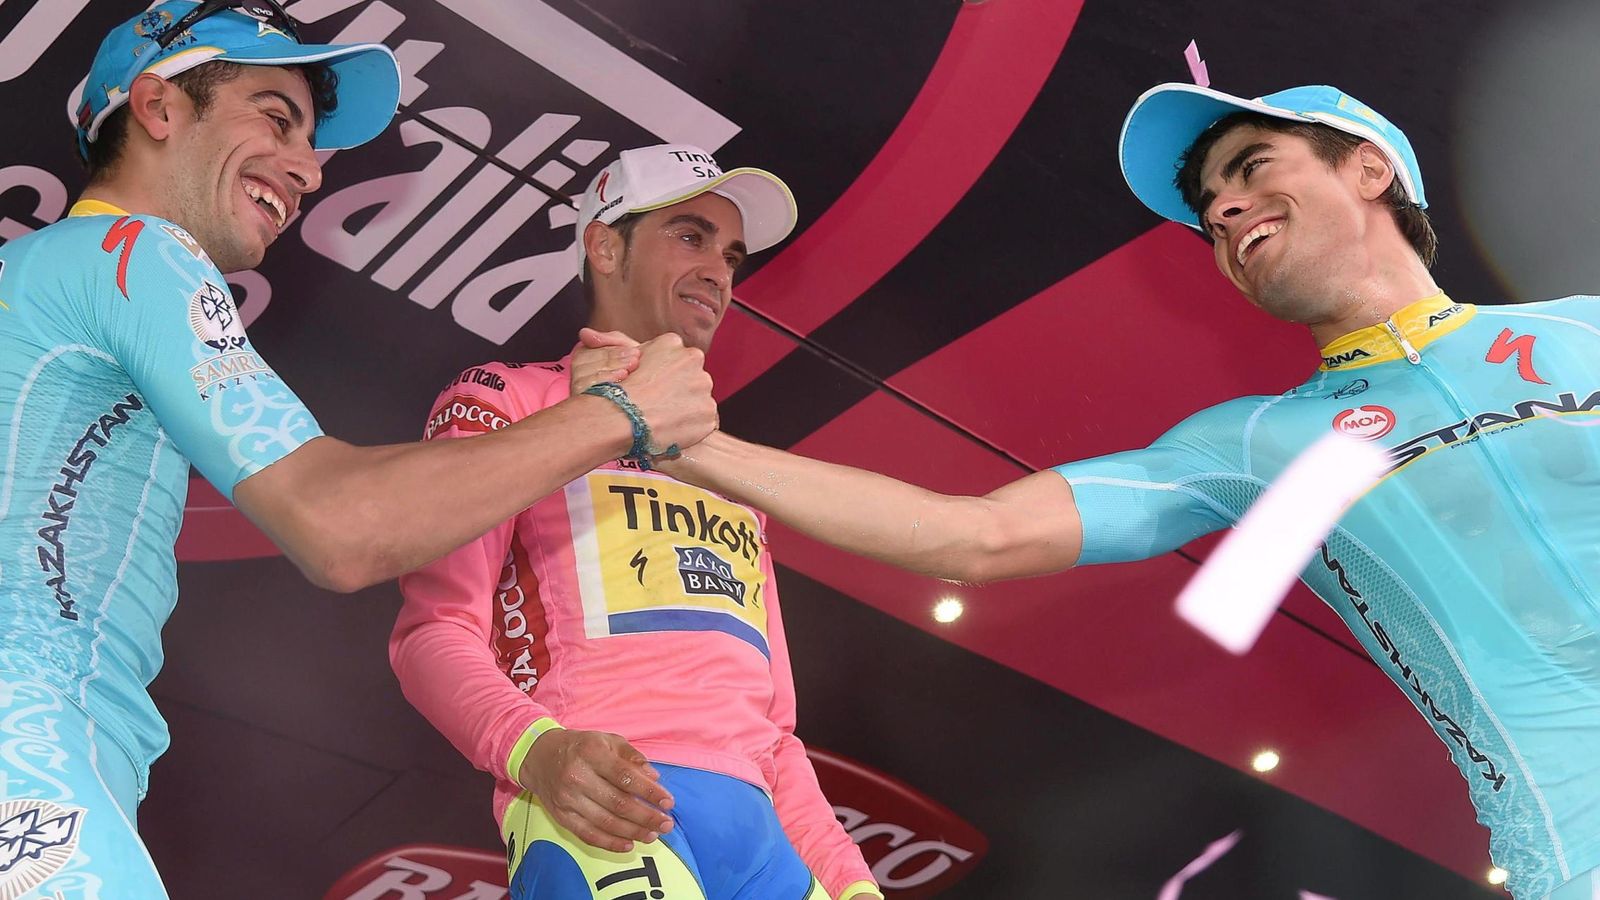 Foto: Mikel Landa saluda a su compañero Fabio Aru en el podio del Giro, con Contador en el centro (Efe)